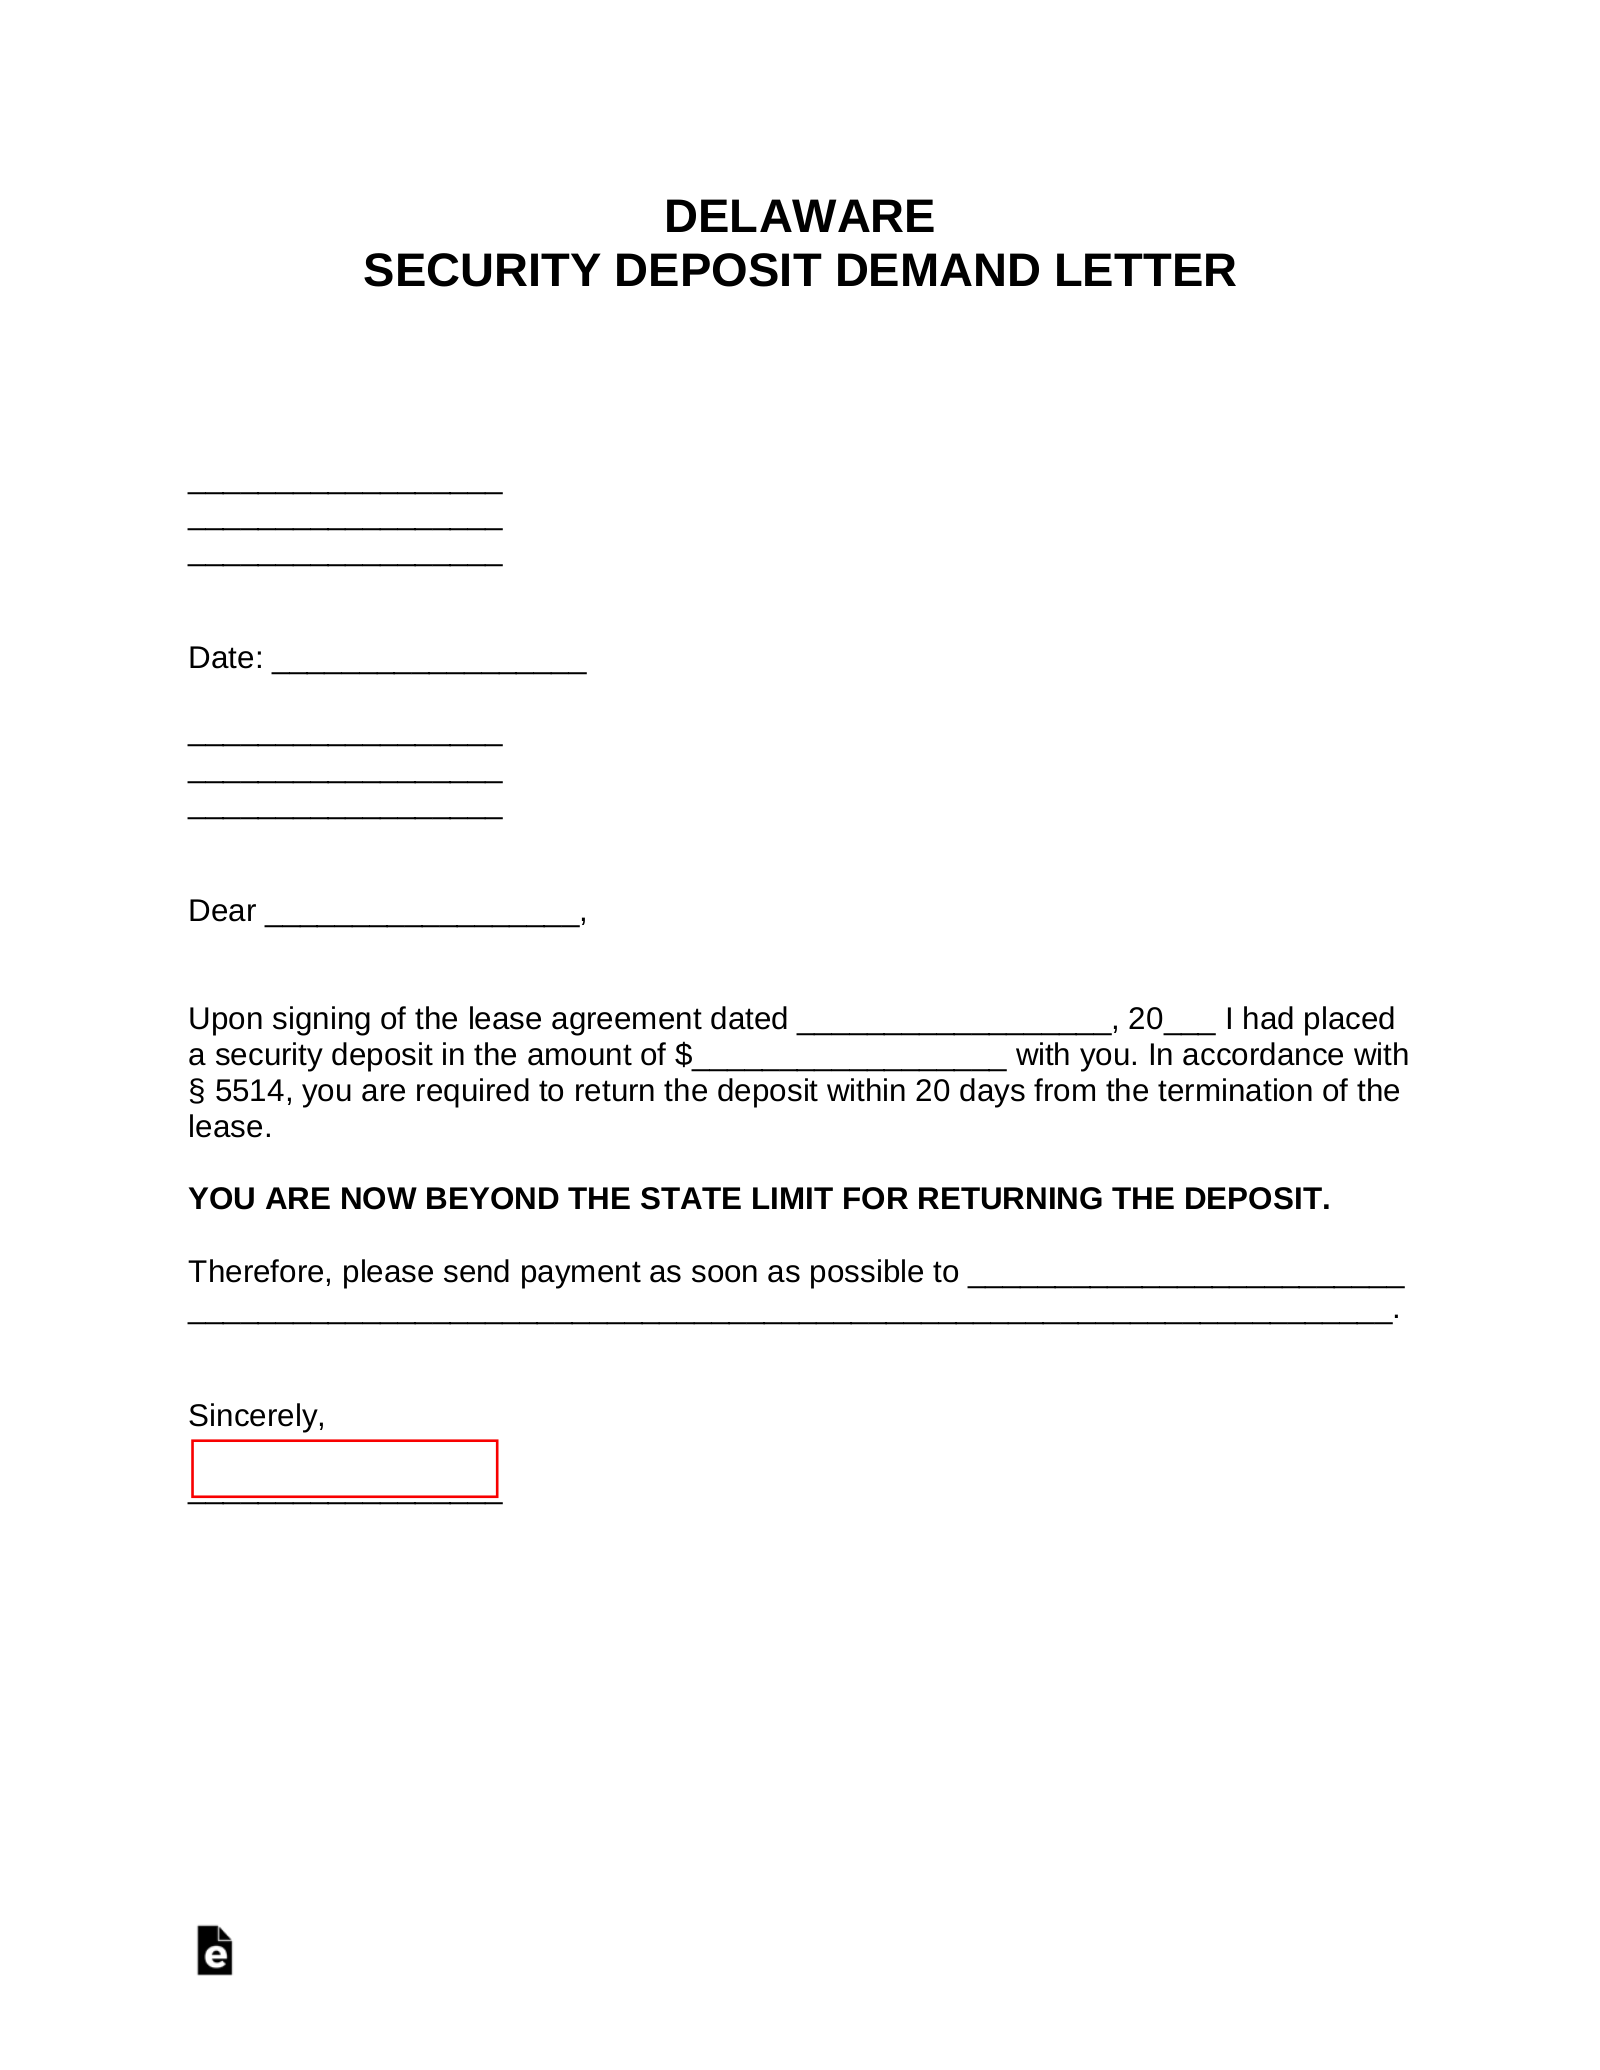 Delaware Security Deposit Demand Letter